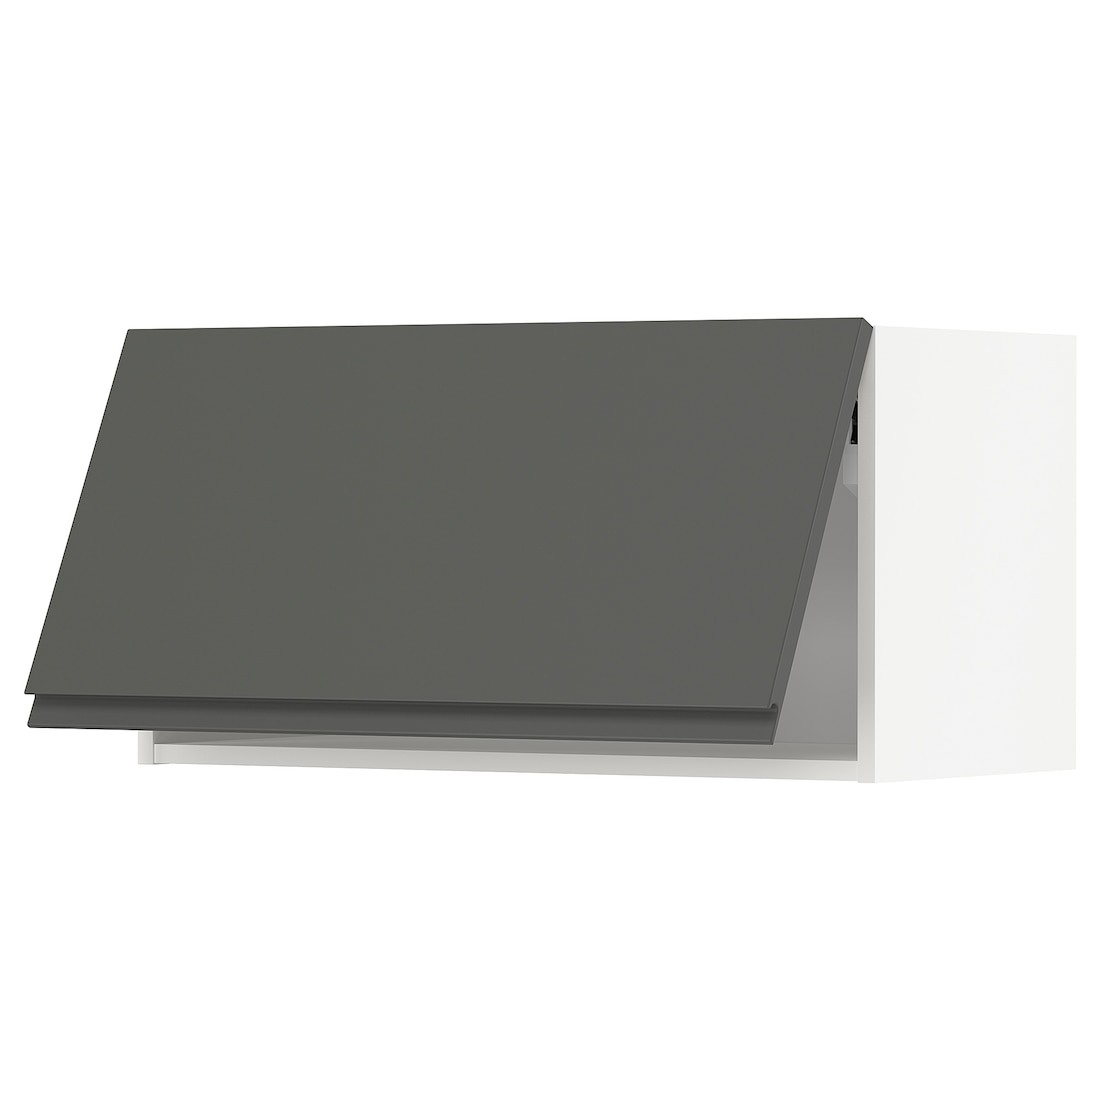 METOD МЕТОД Навесной горизонтальный шкаф, белый / Voxtorp темно-серый, 80x40 см